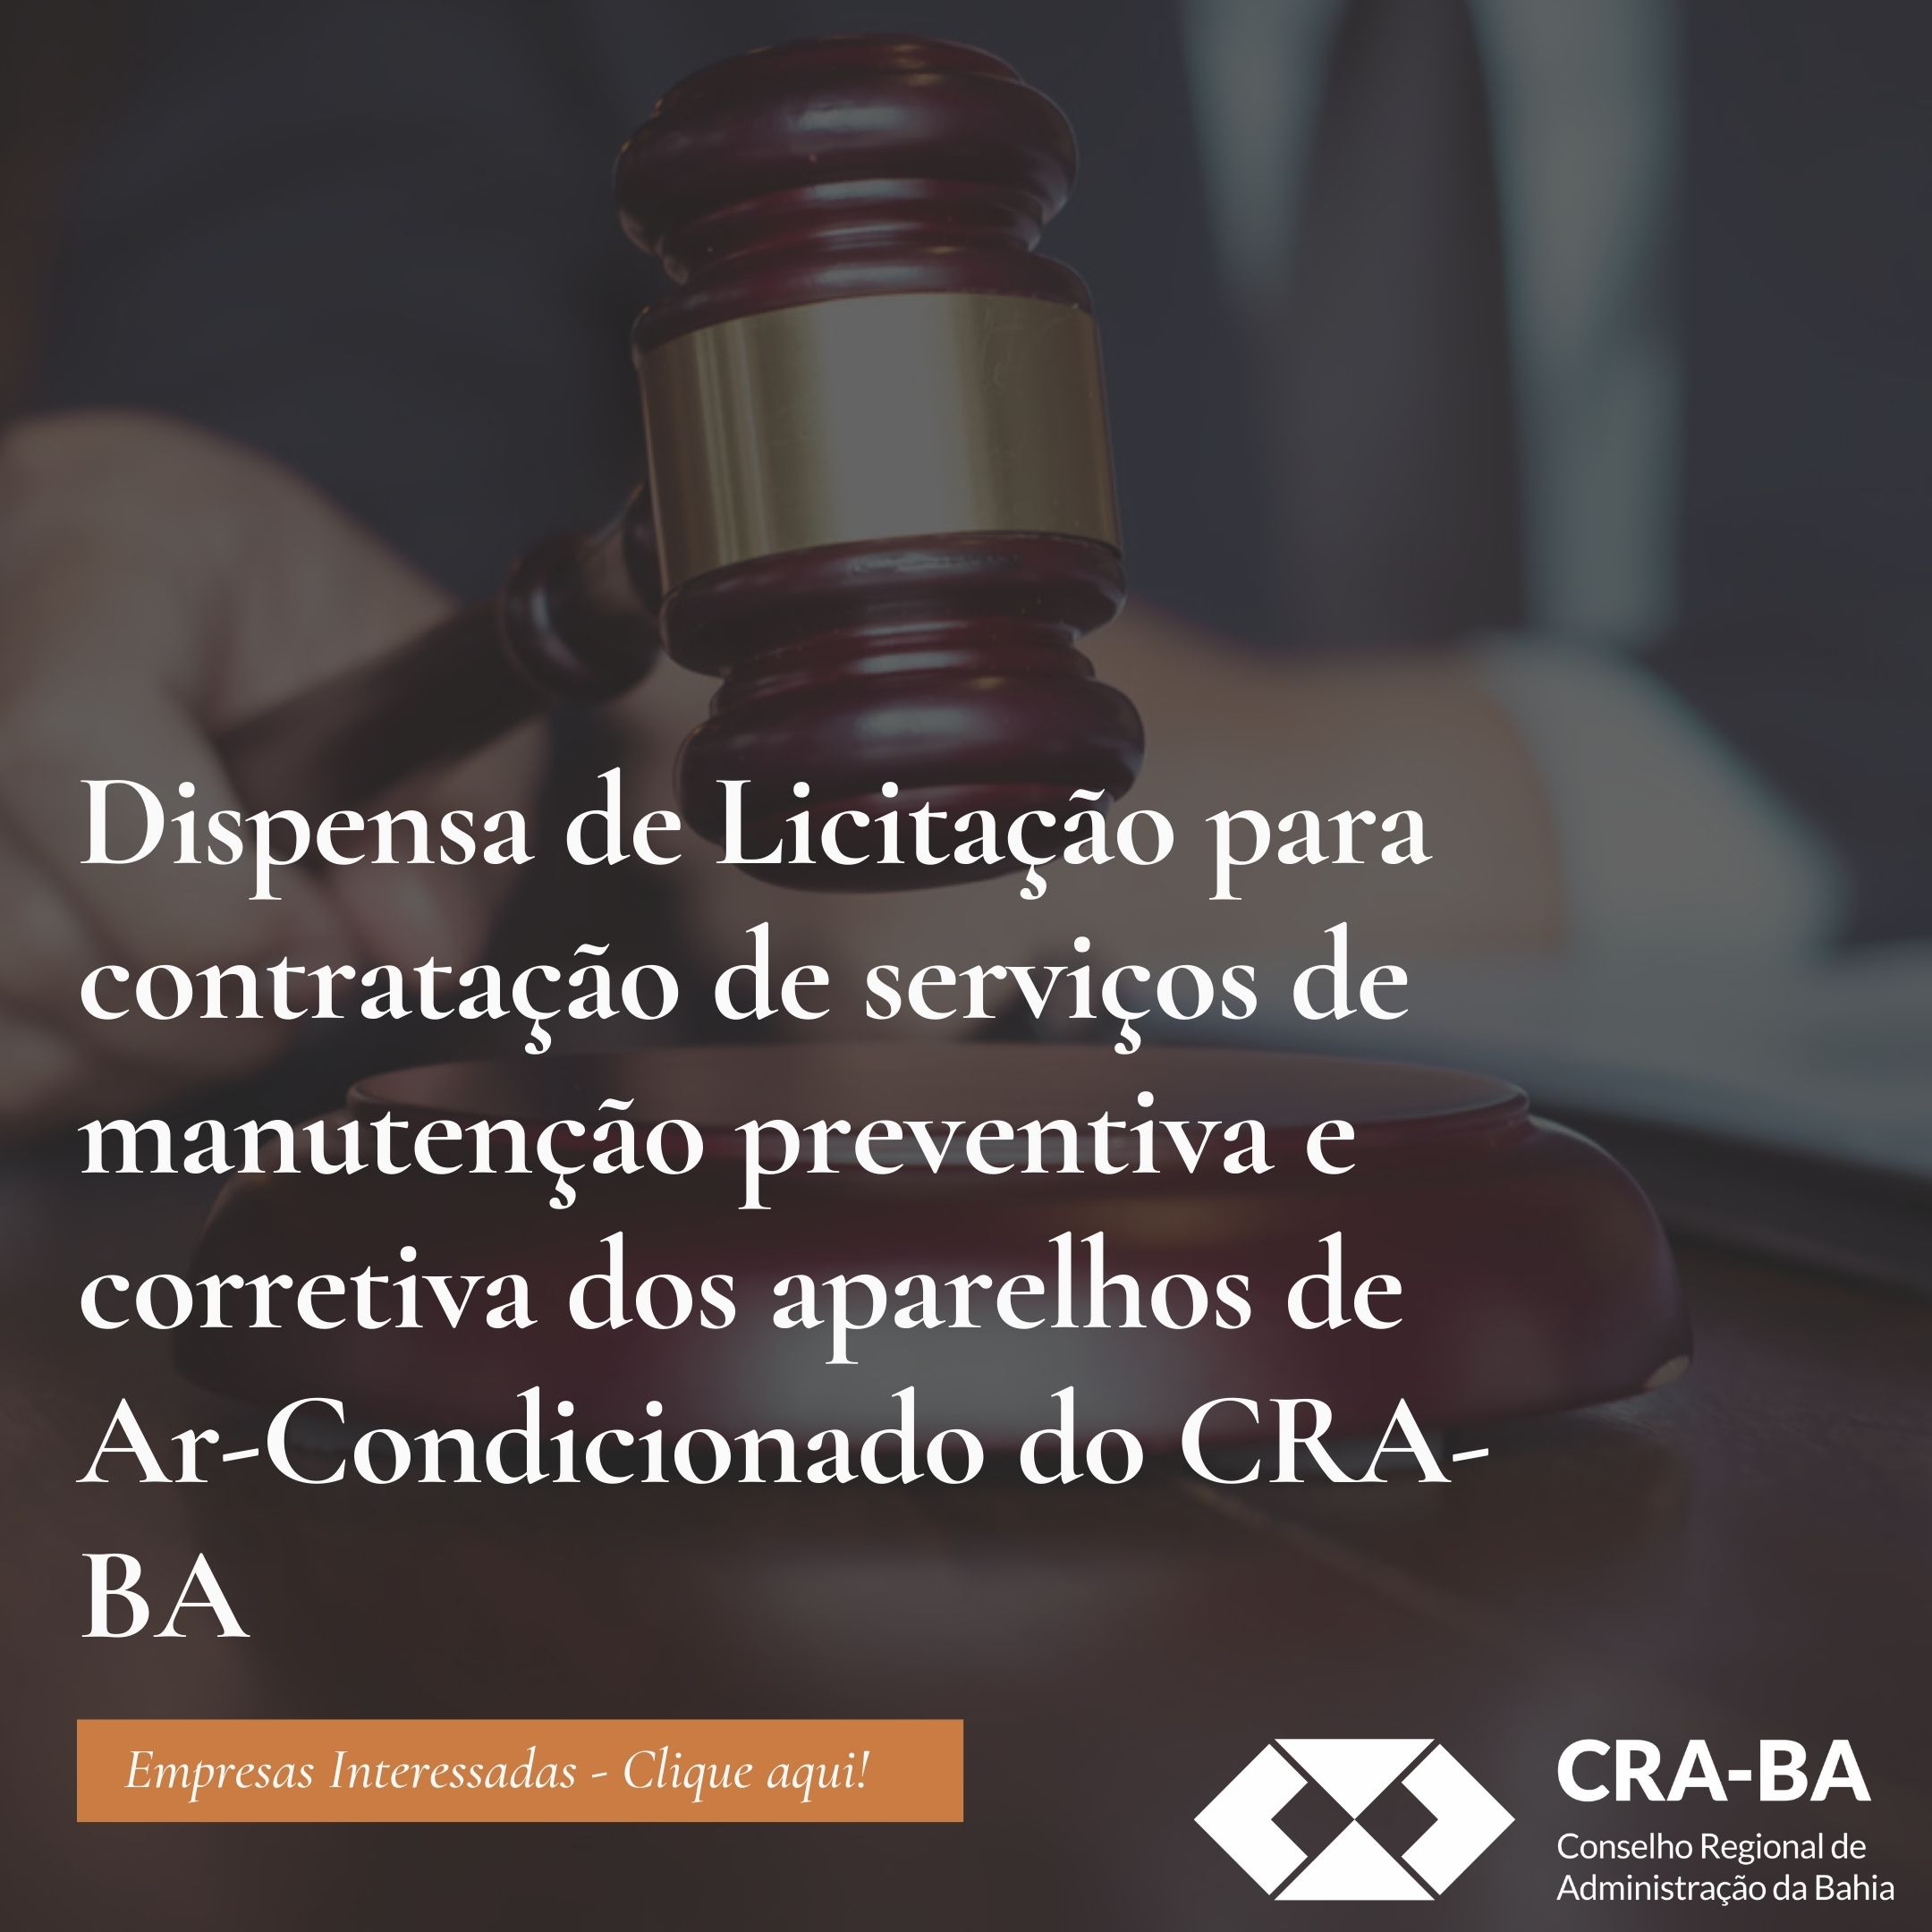 You are currently viewing Dispensa de Licitação para contratação de serviços de manutenção preventiva e corretiva dos aparelhos de Ar-condicionado do CRA-BA